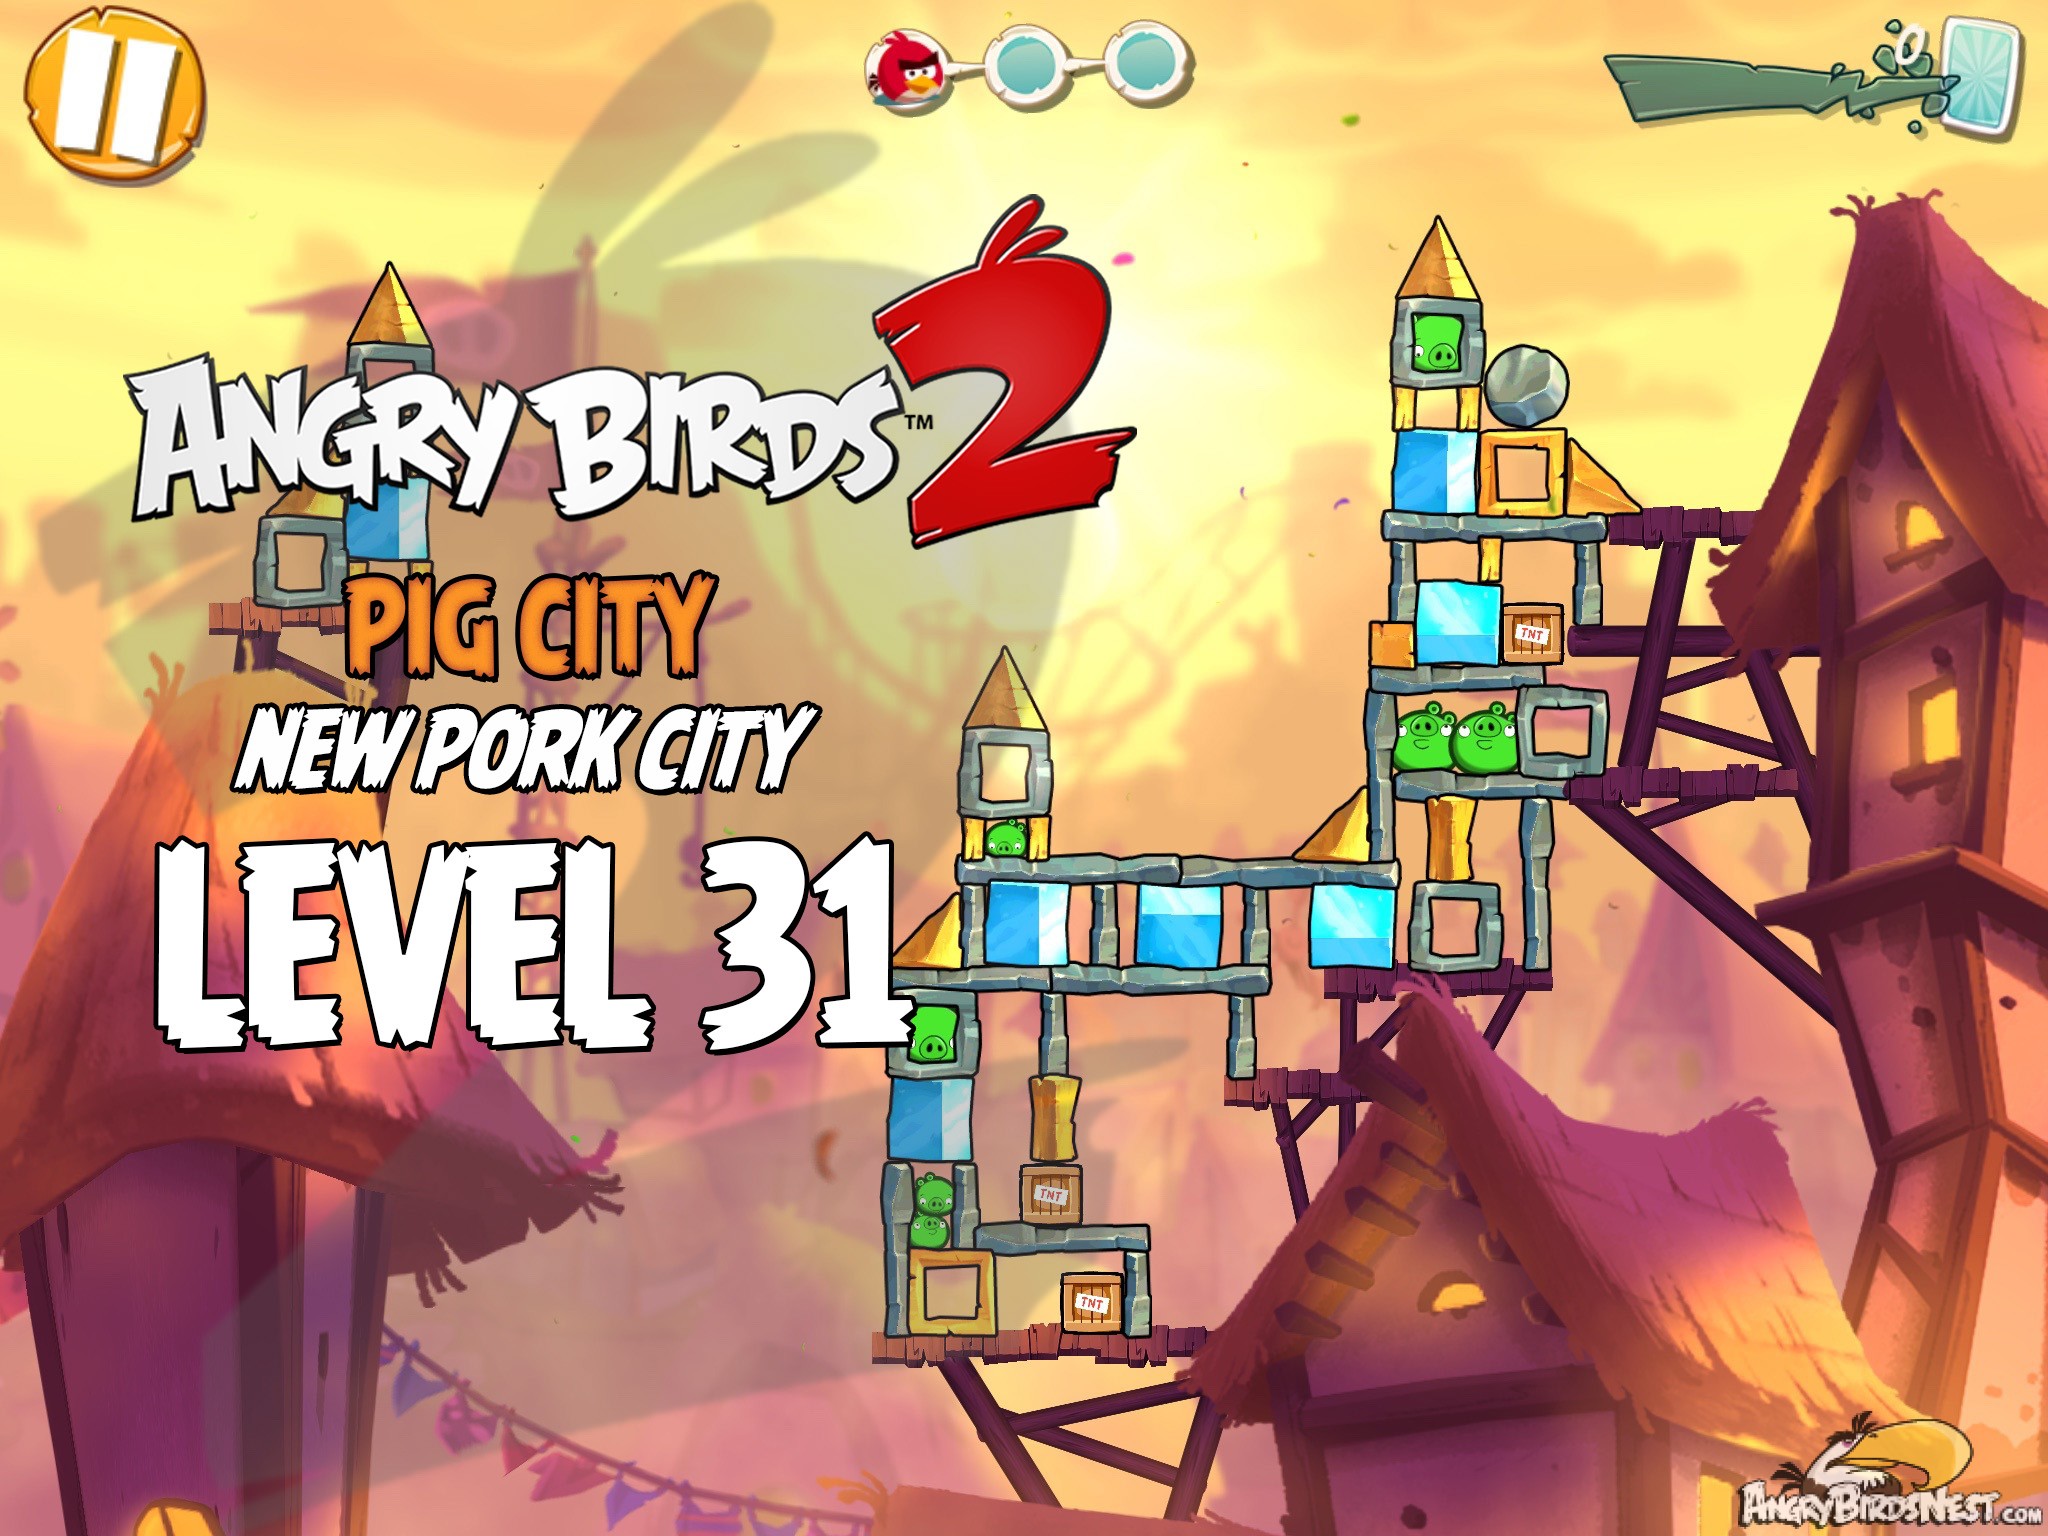 Angry Birds 2 Pig City New Pork City Level 31